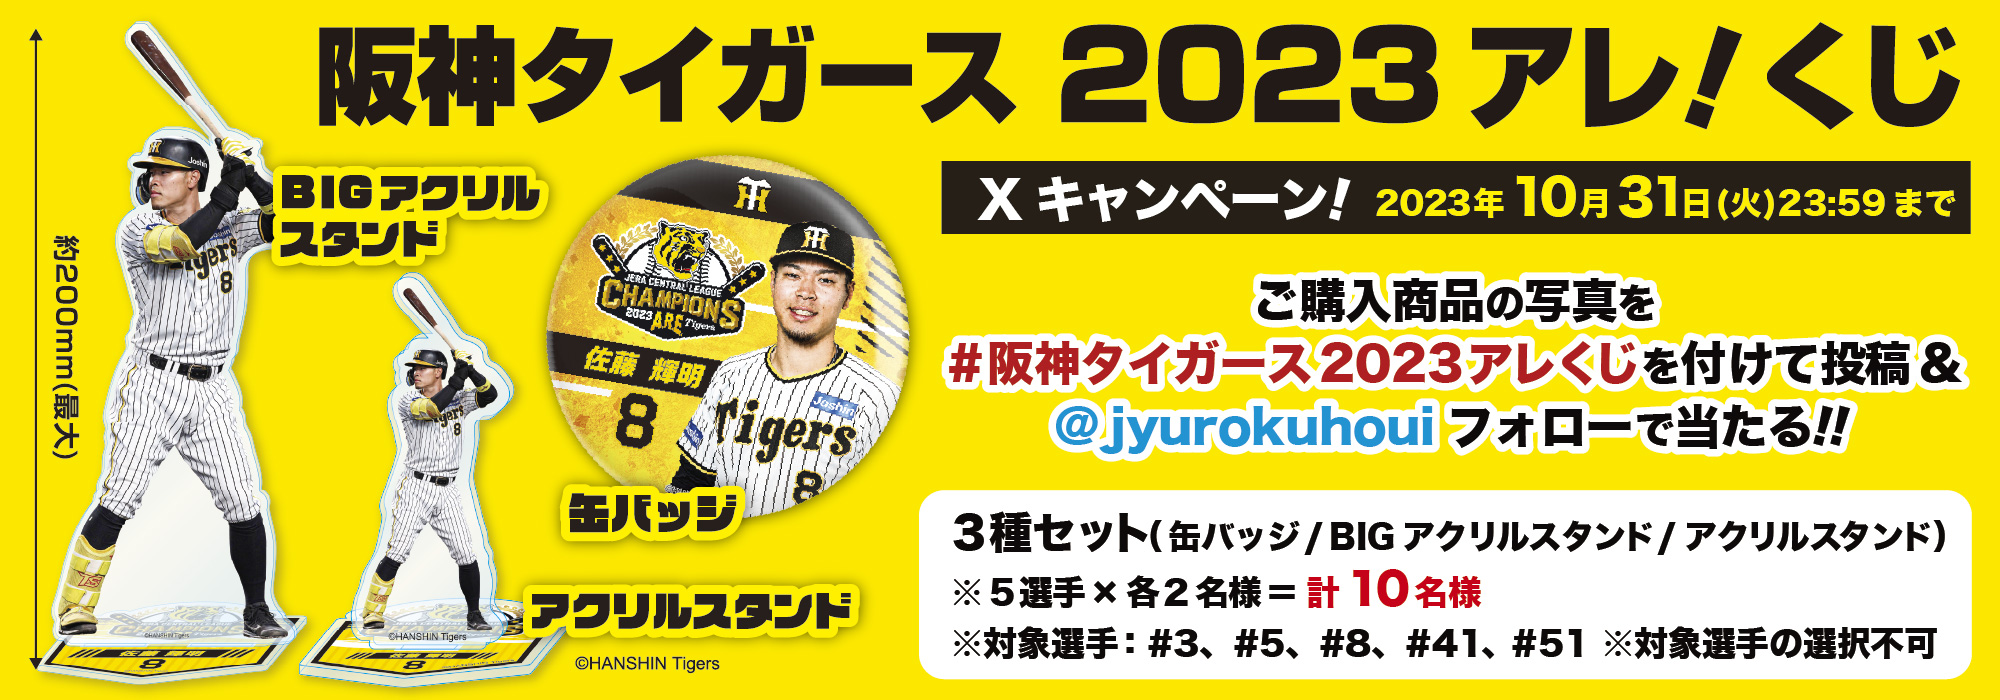 「阪神タイガース 2023アレ！くじ」Xキャンペーン